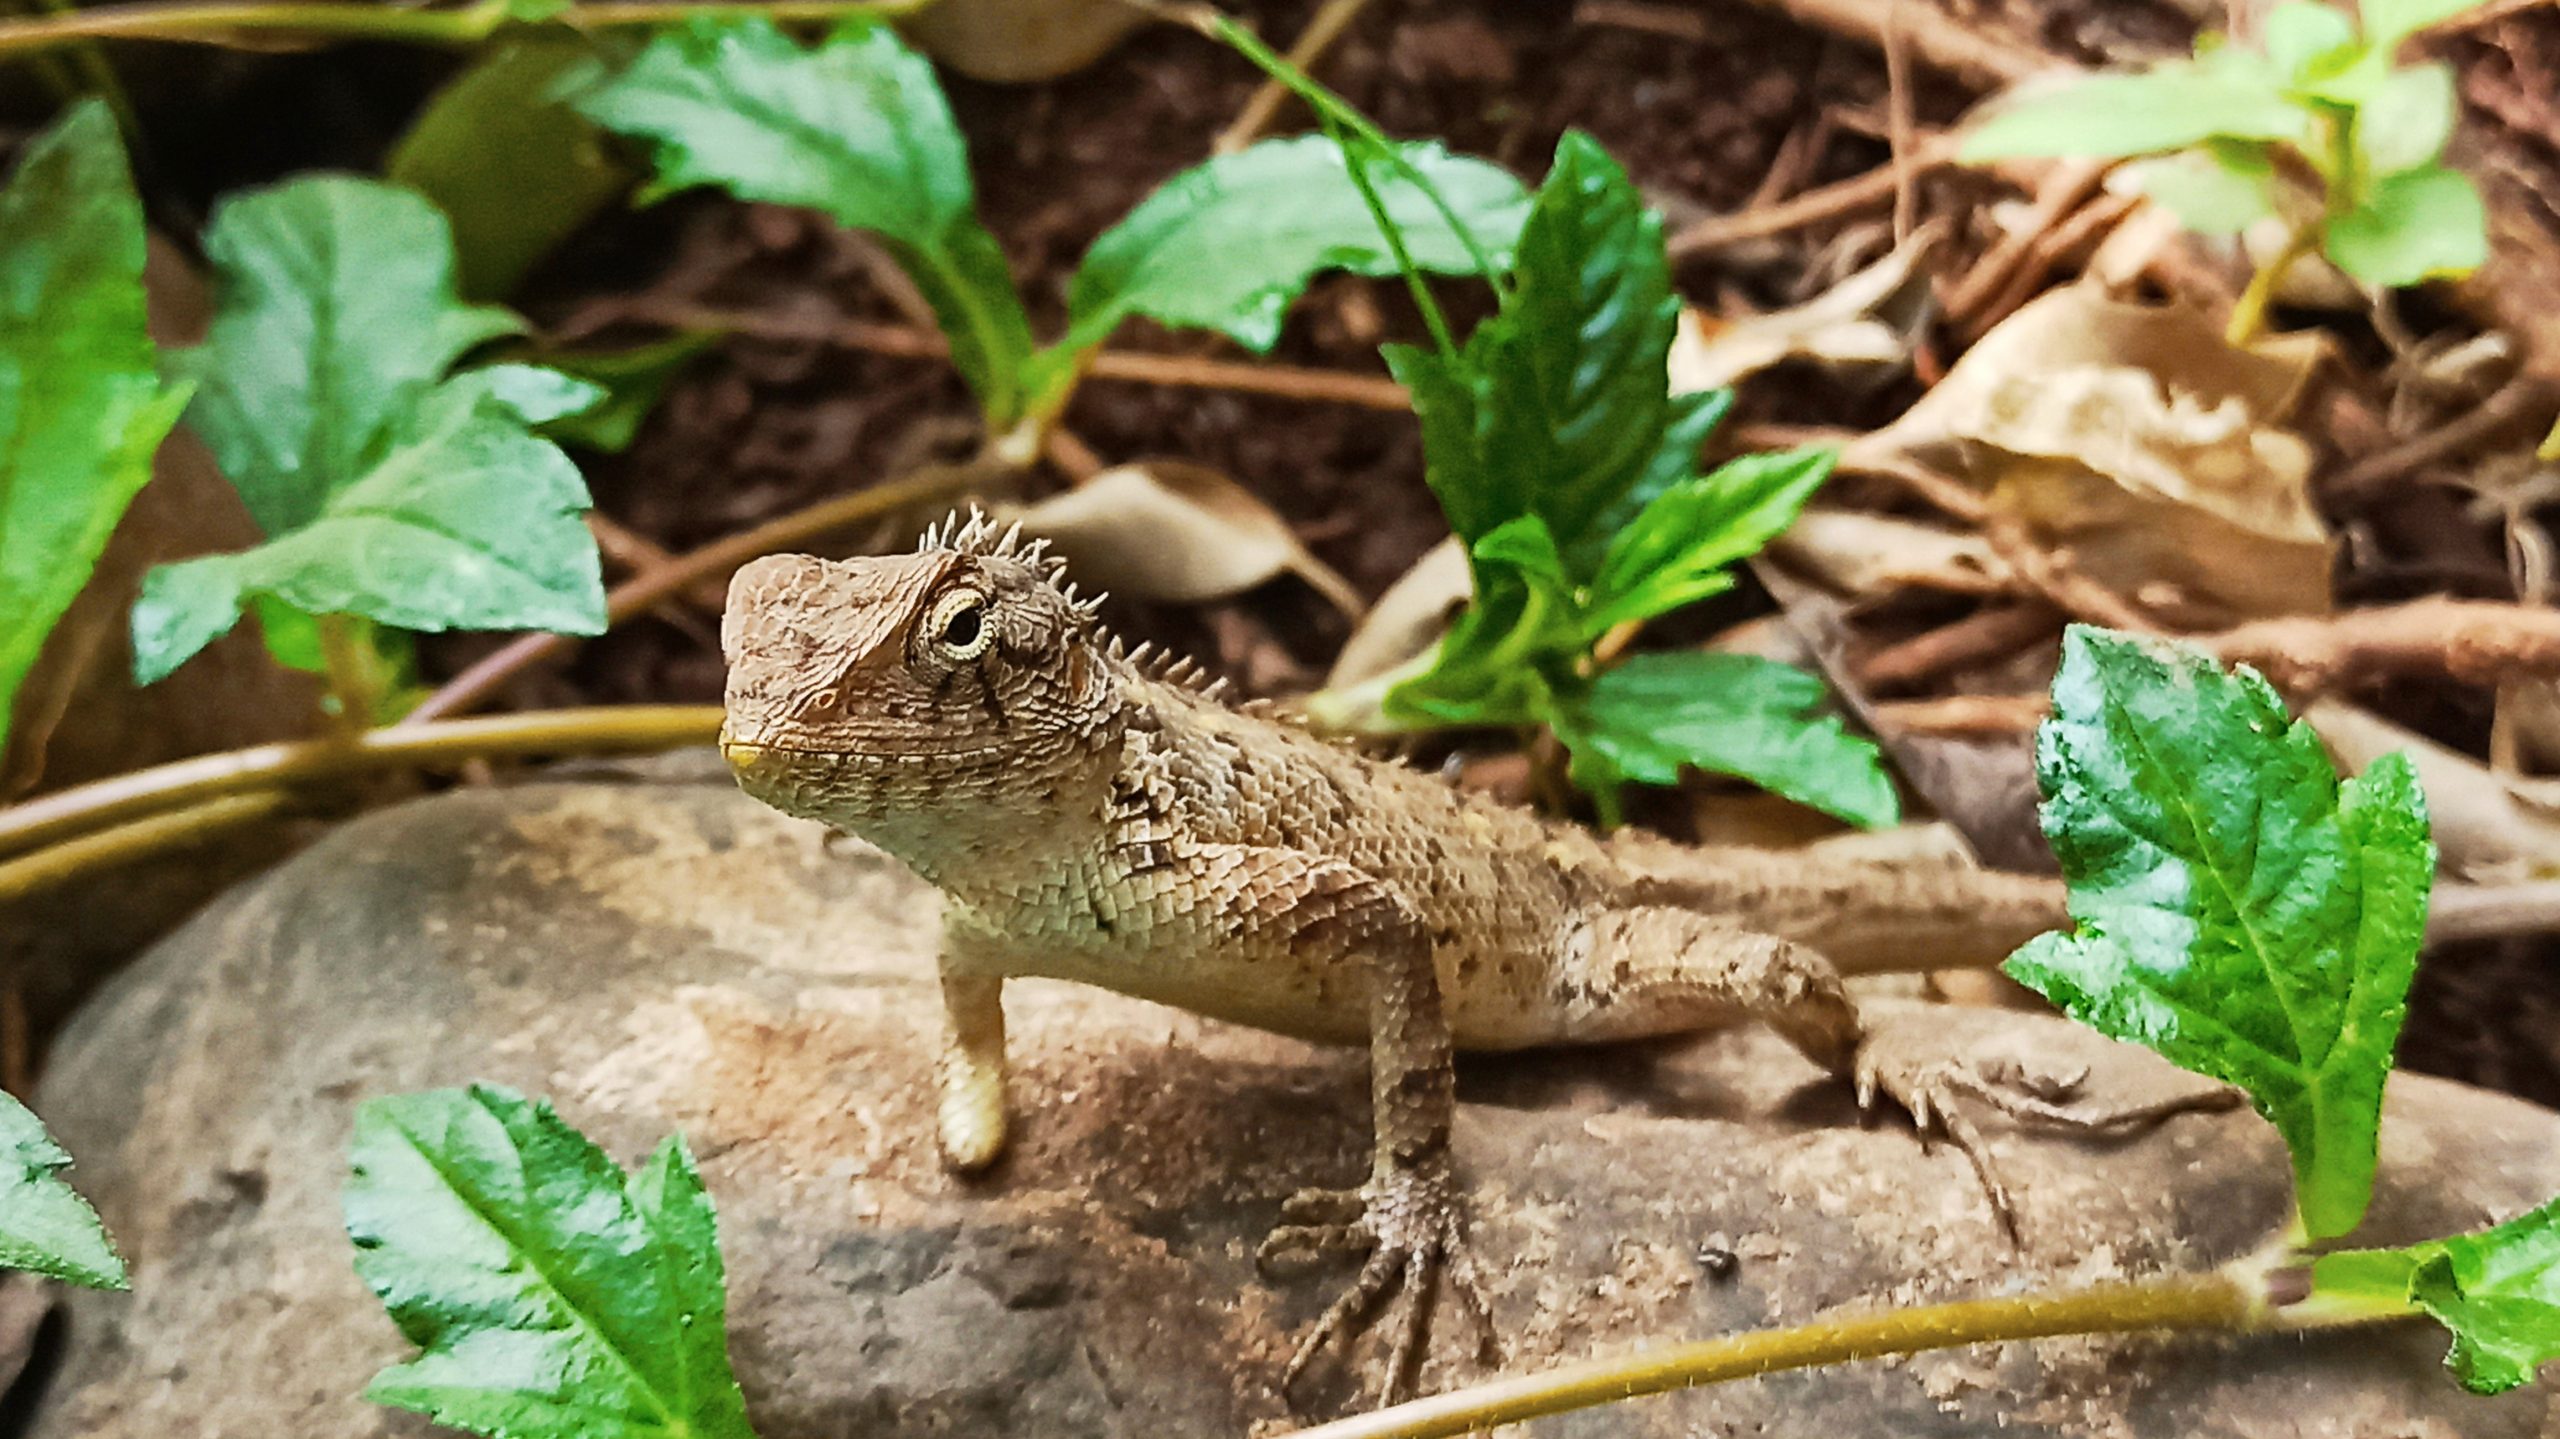 A garden lizard